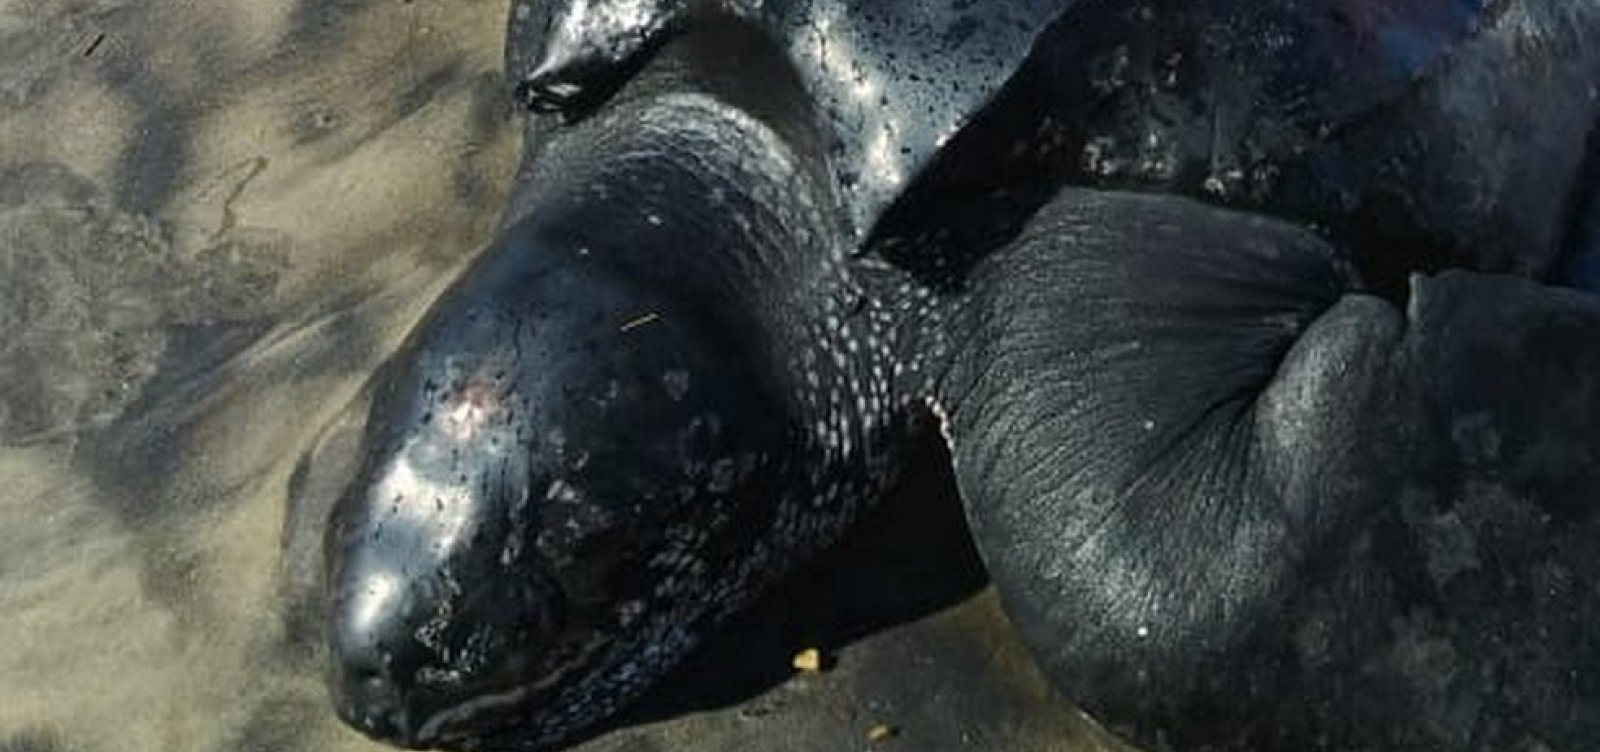 Ameaçada de extinção, tartaruga gigante que encalhou em praias da Bahia morre